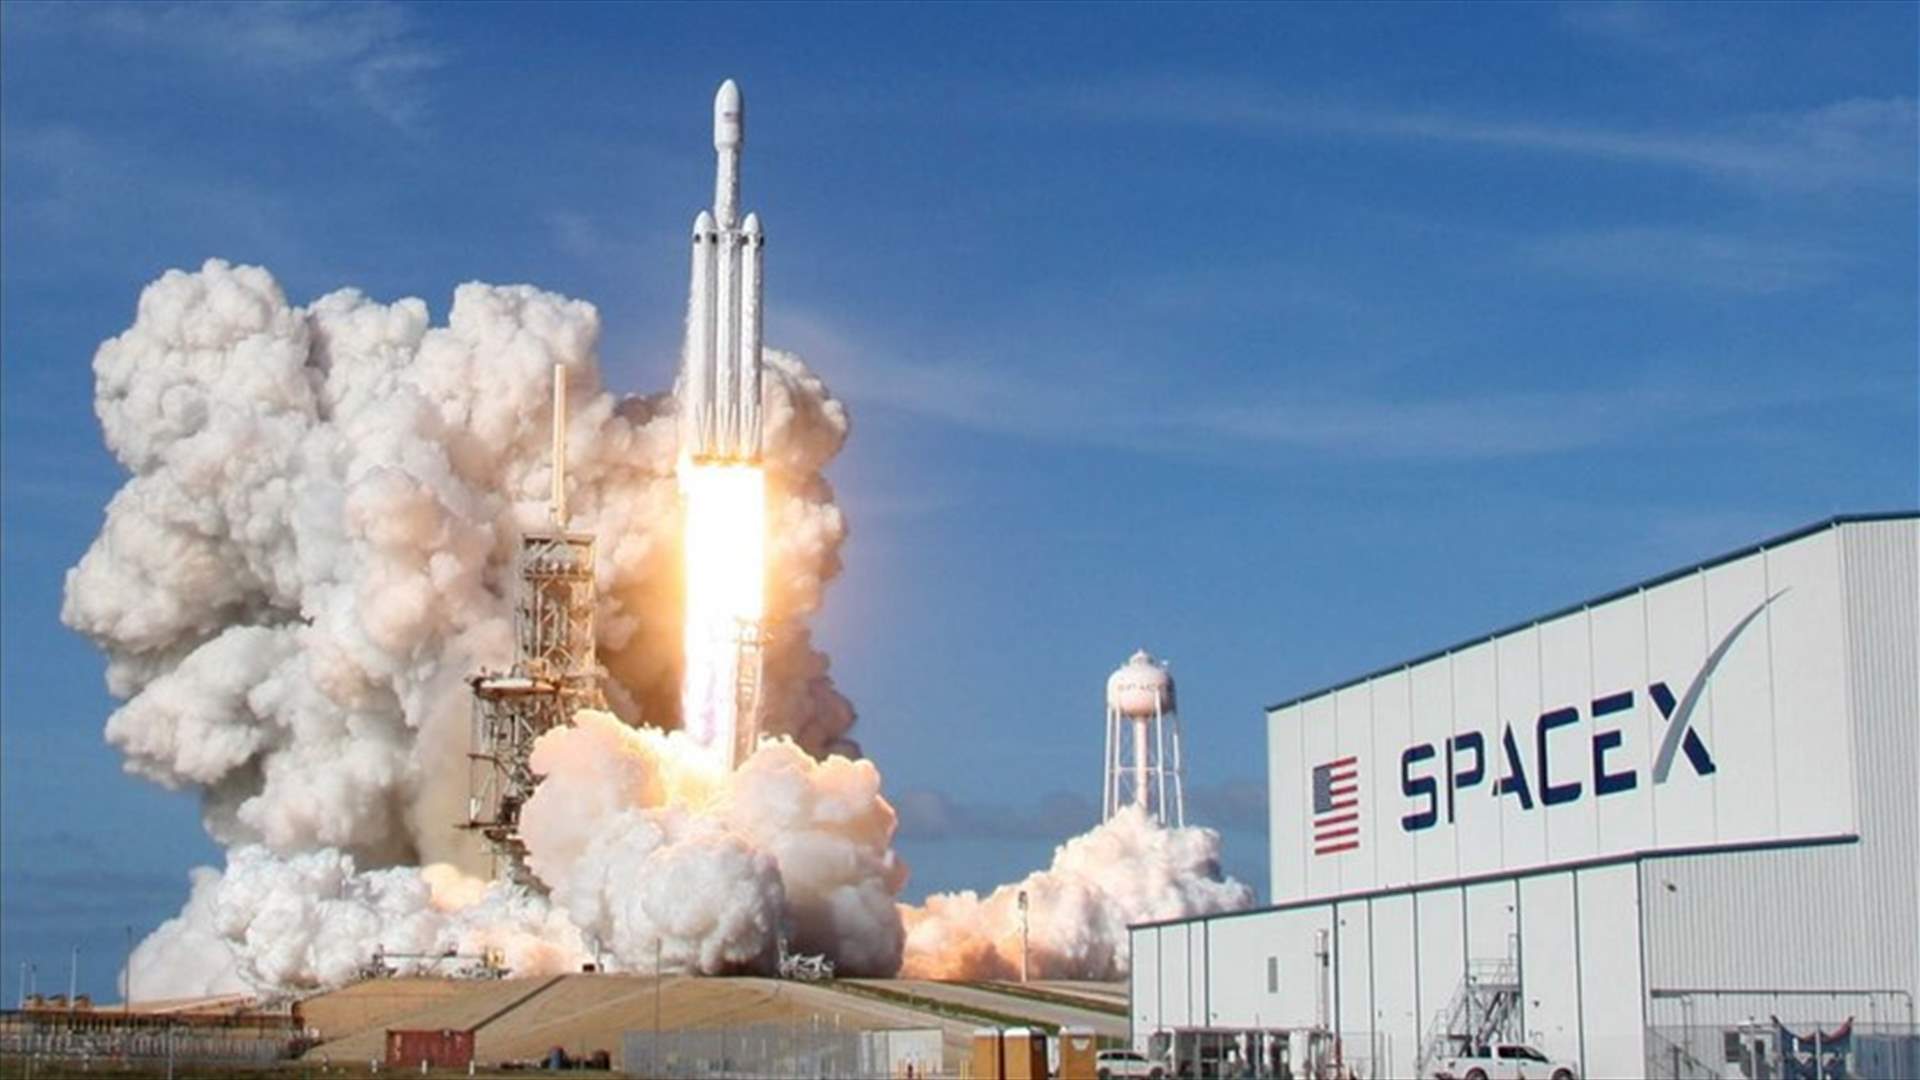 بعد مهمة ناسا و SpaceX التاريخية... صورة مذهلة للمركبة حول القمر